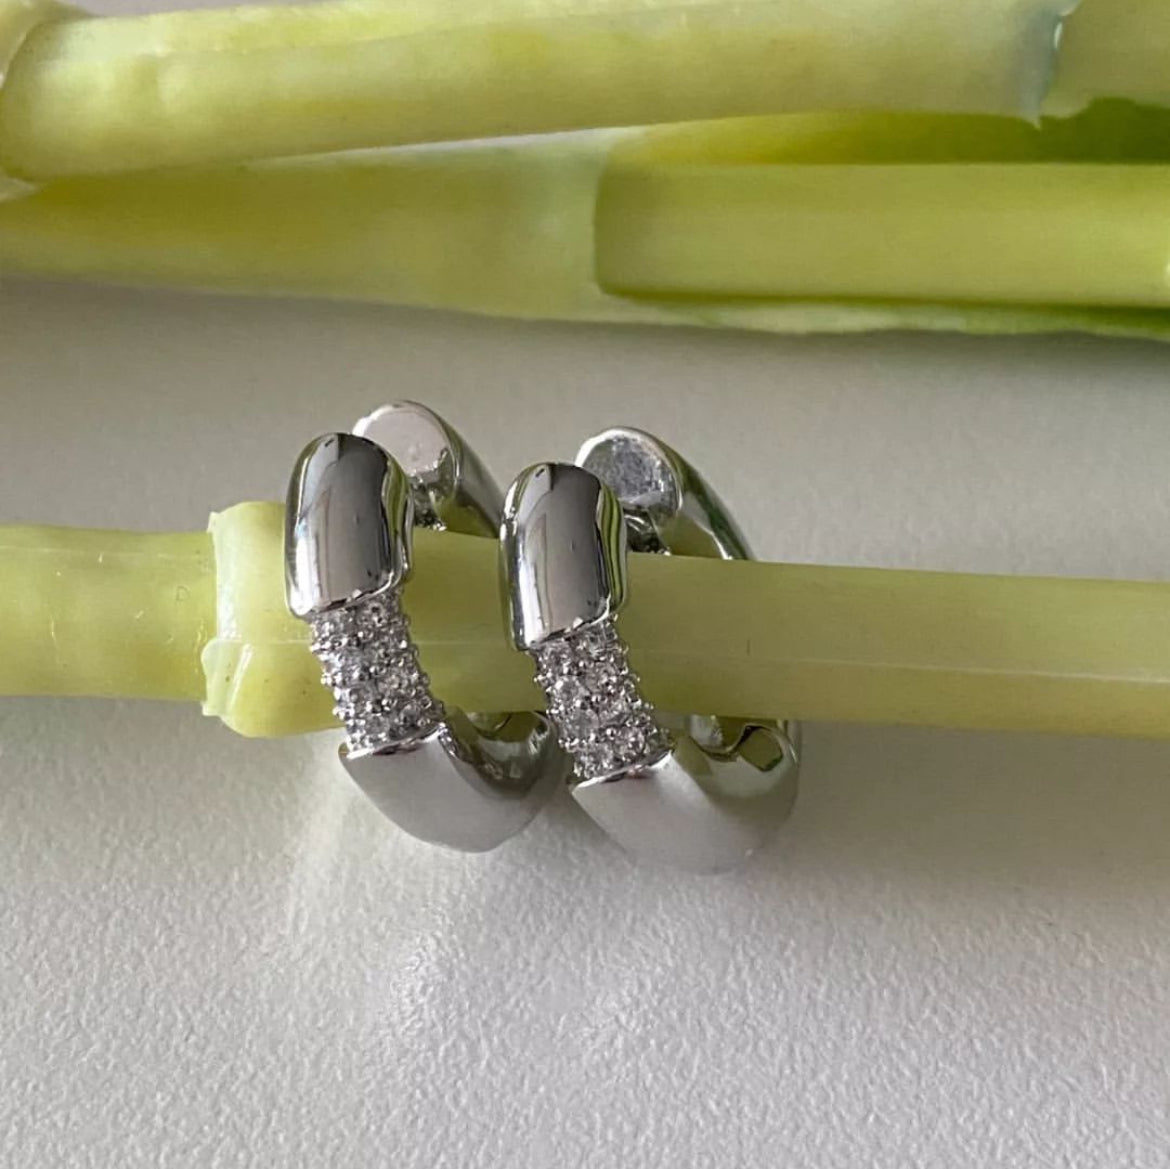 MoD Earrings in Silver